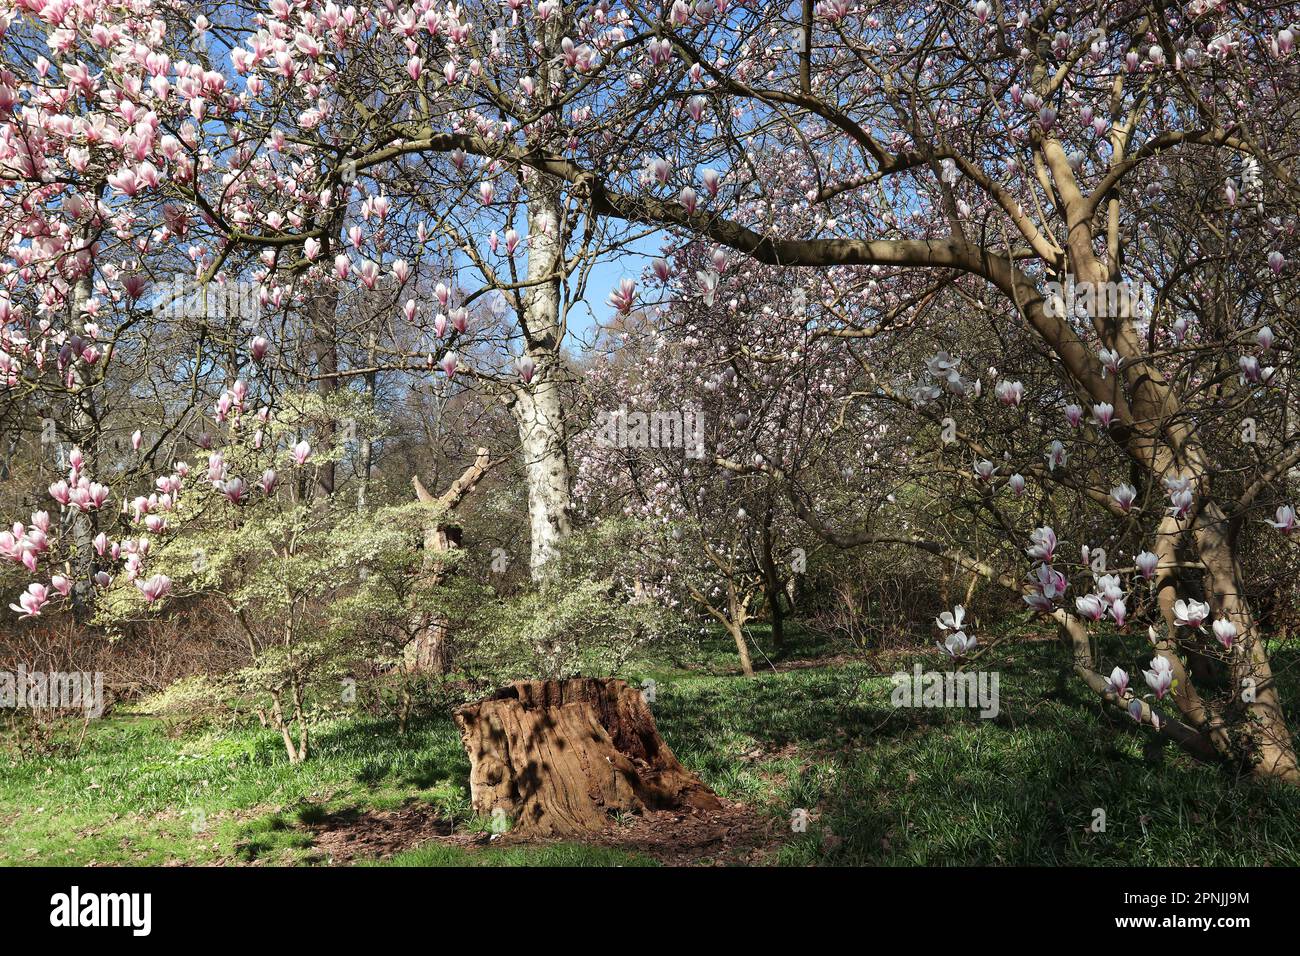 Les fleurs des magnolias s'épanouissent autour d'un jardin boisé (avec un petit arbre au premier plan) au printemps sous un ciel bleu vif. Angleterre, avril Banque D'Images